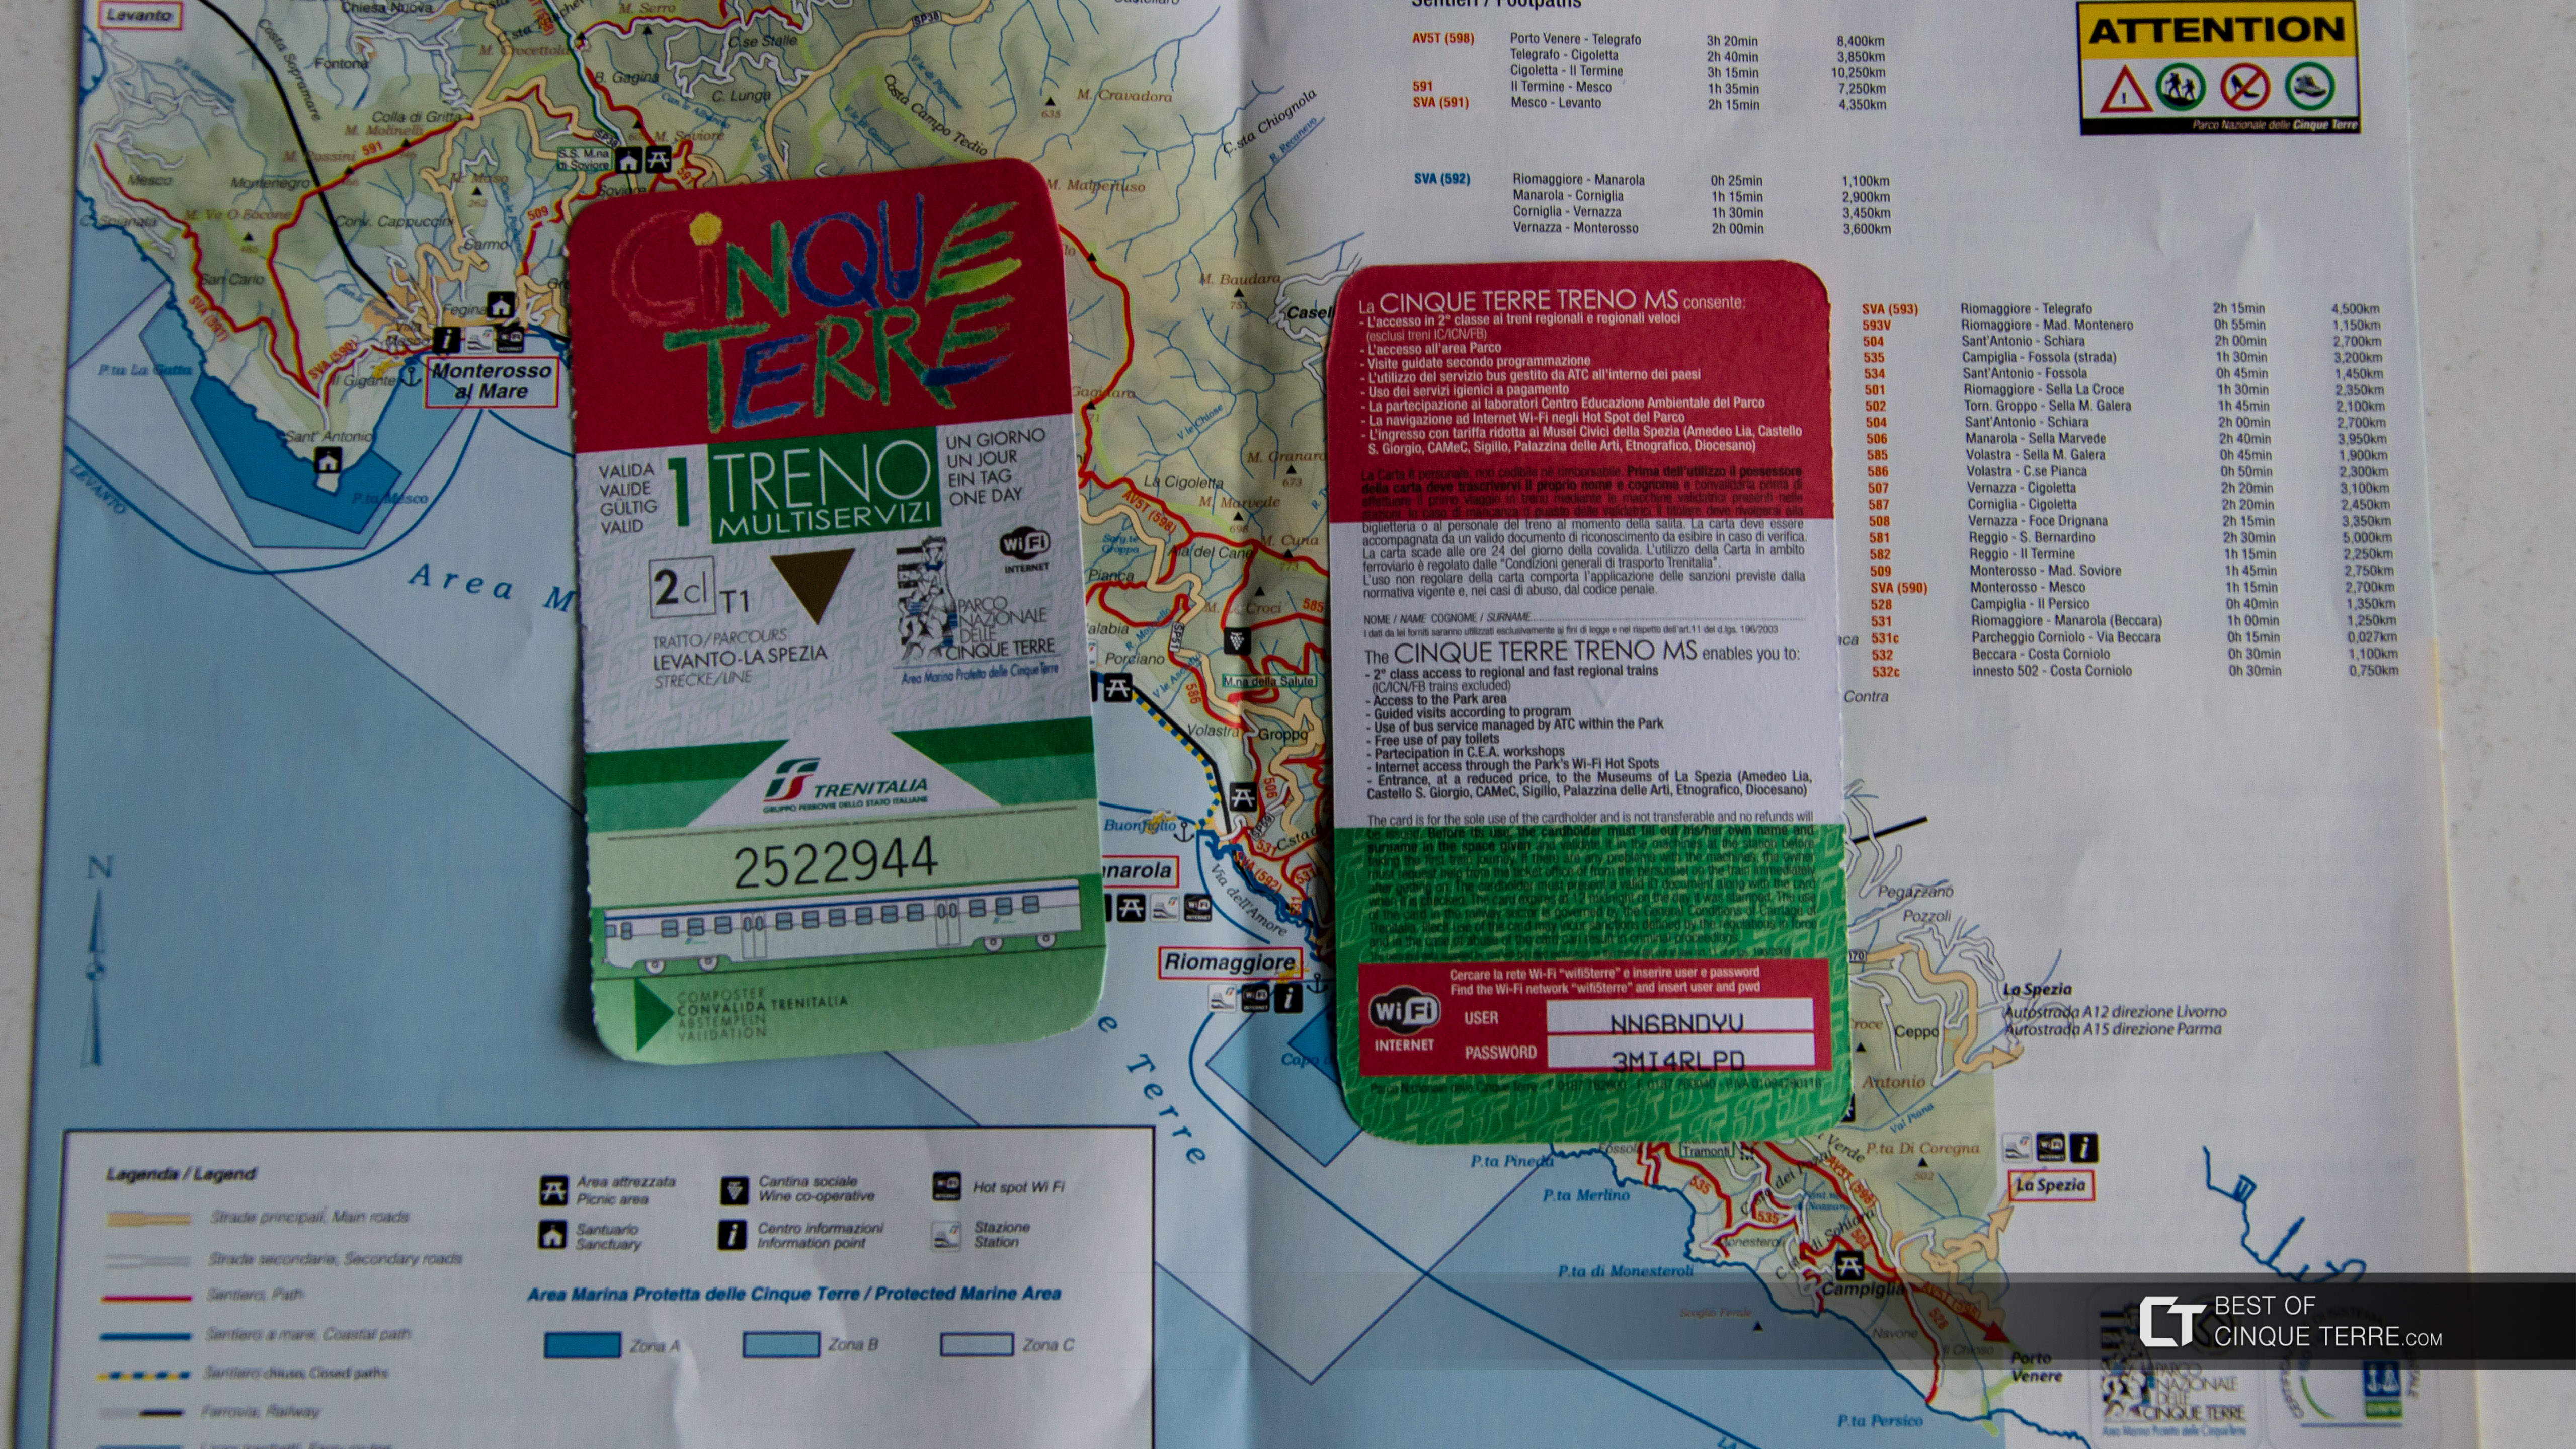 Die Cinque Terre Card mit Bahn, Italien